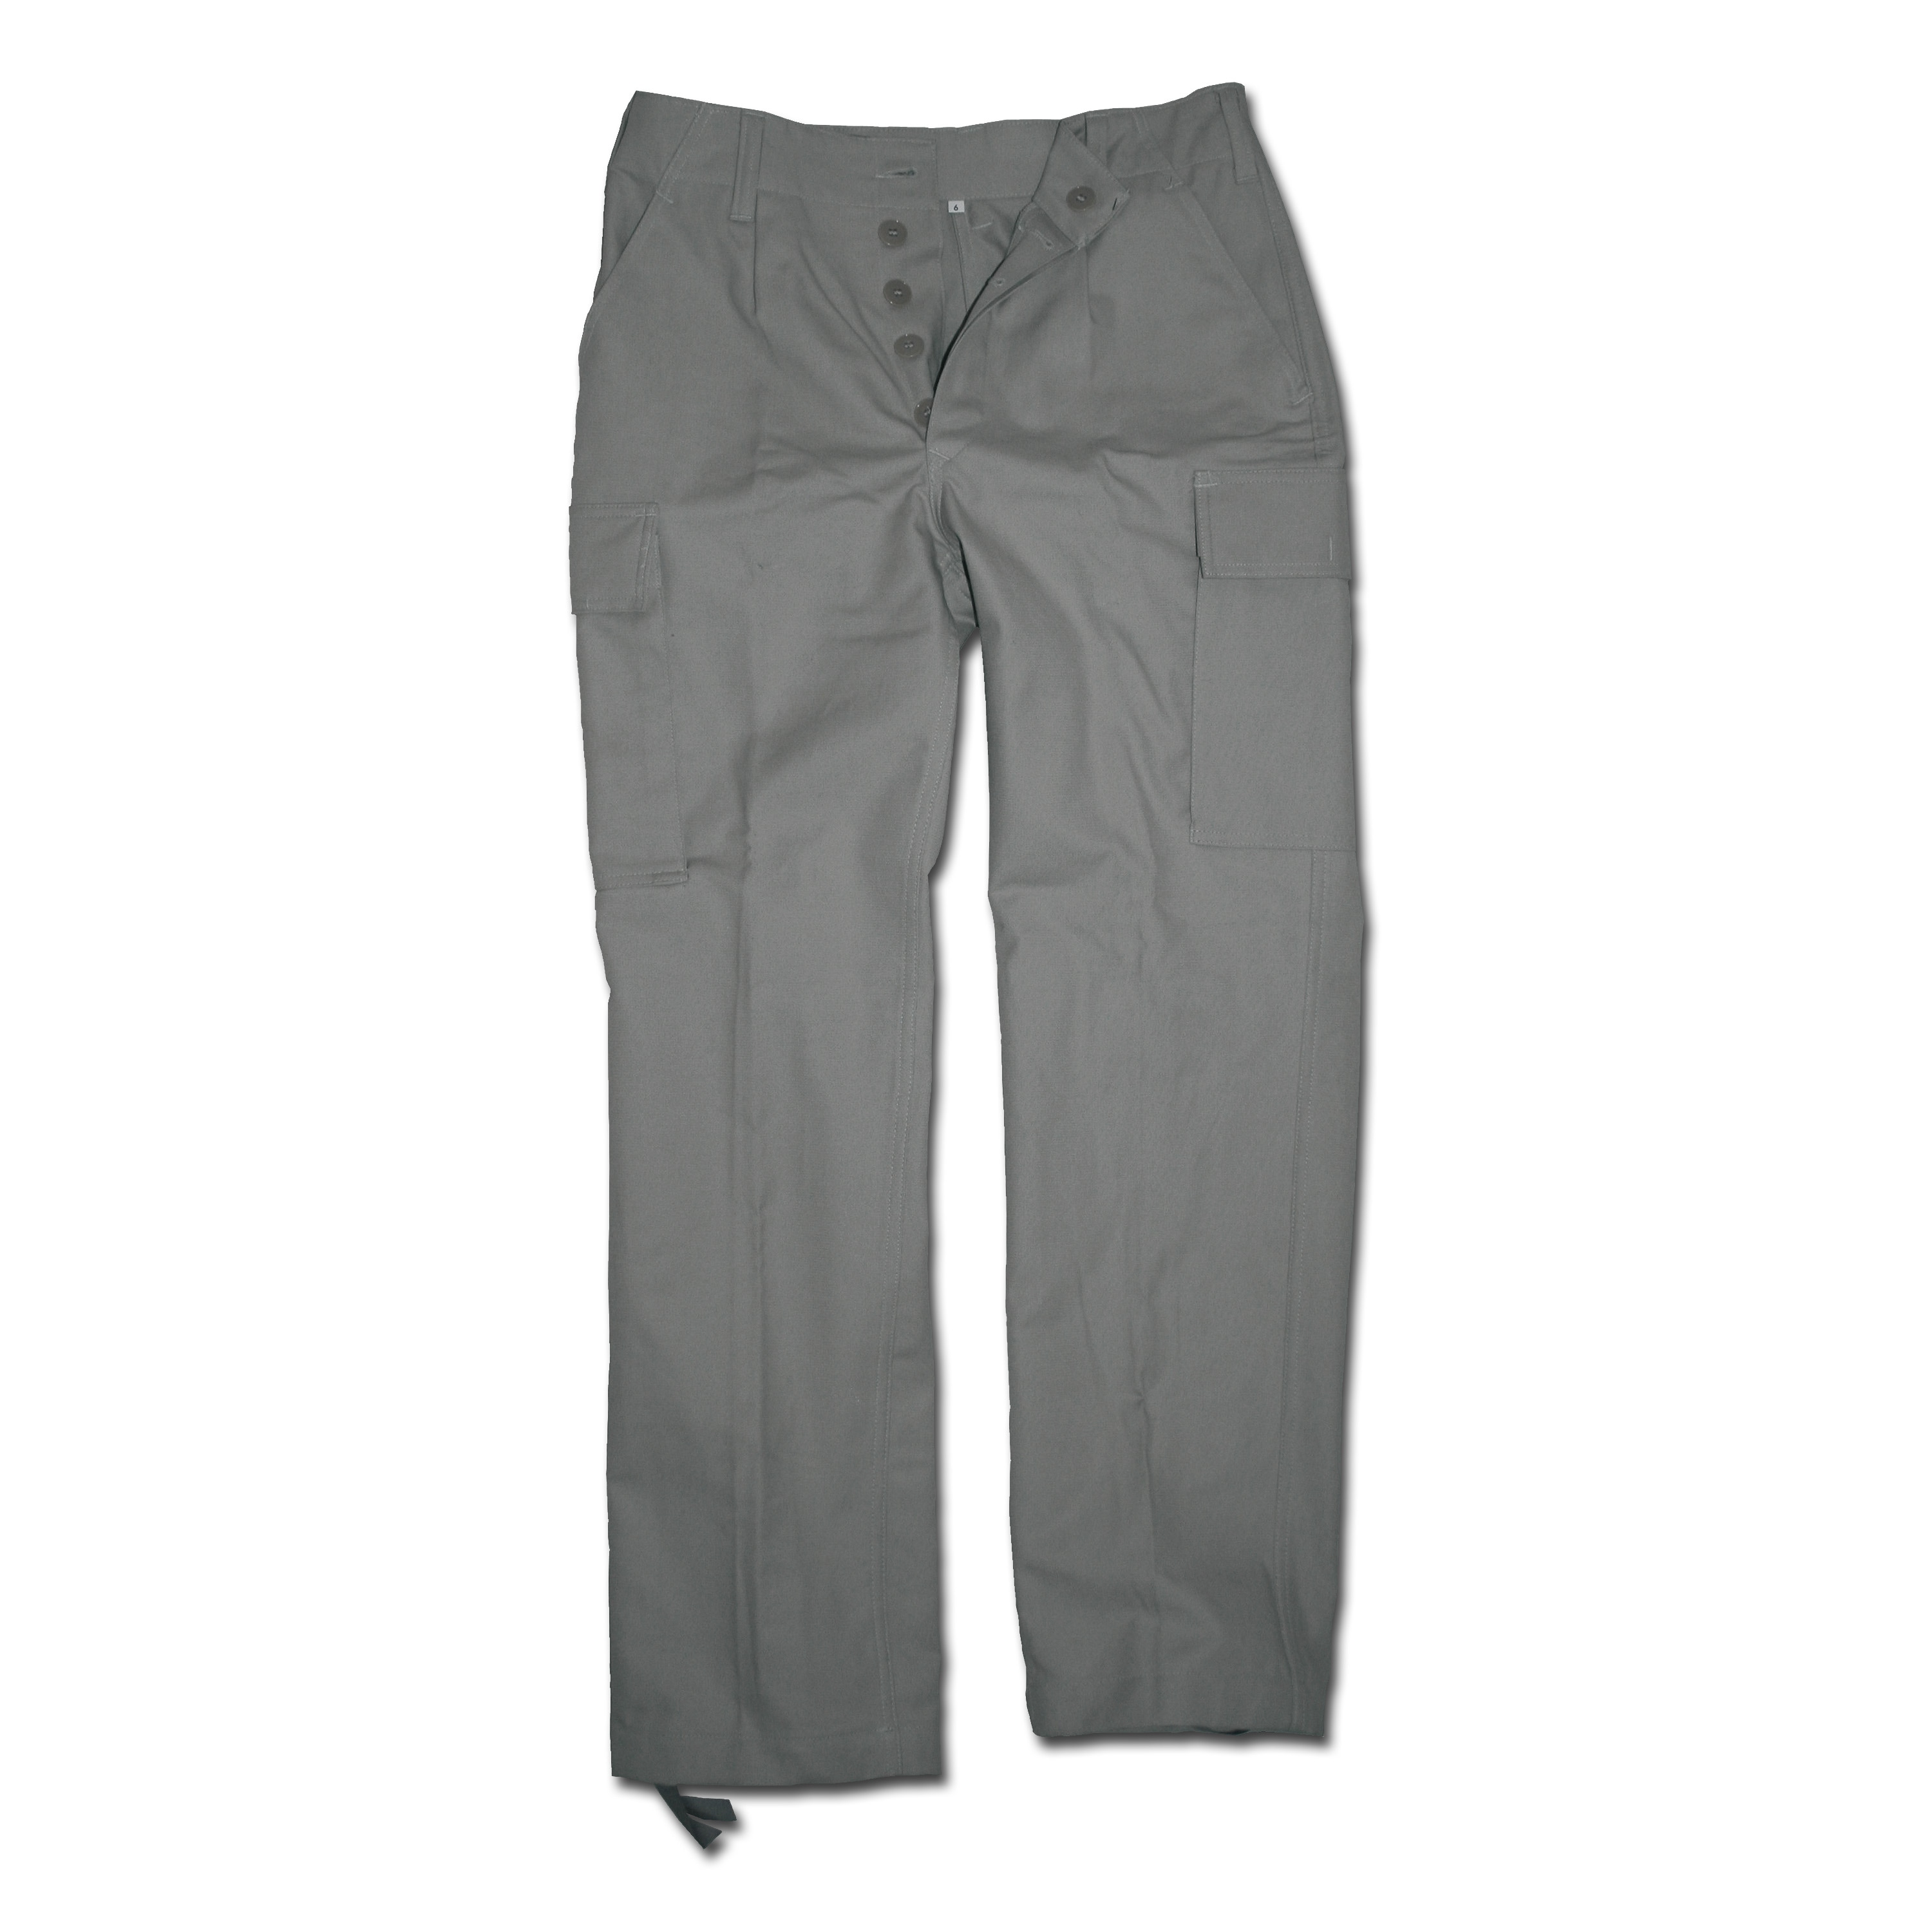 Moleskin Pants gray | Moleskin Pants gray | Field Pants | Trousers ...